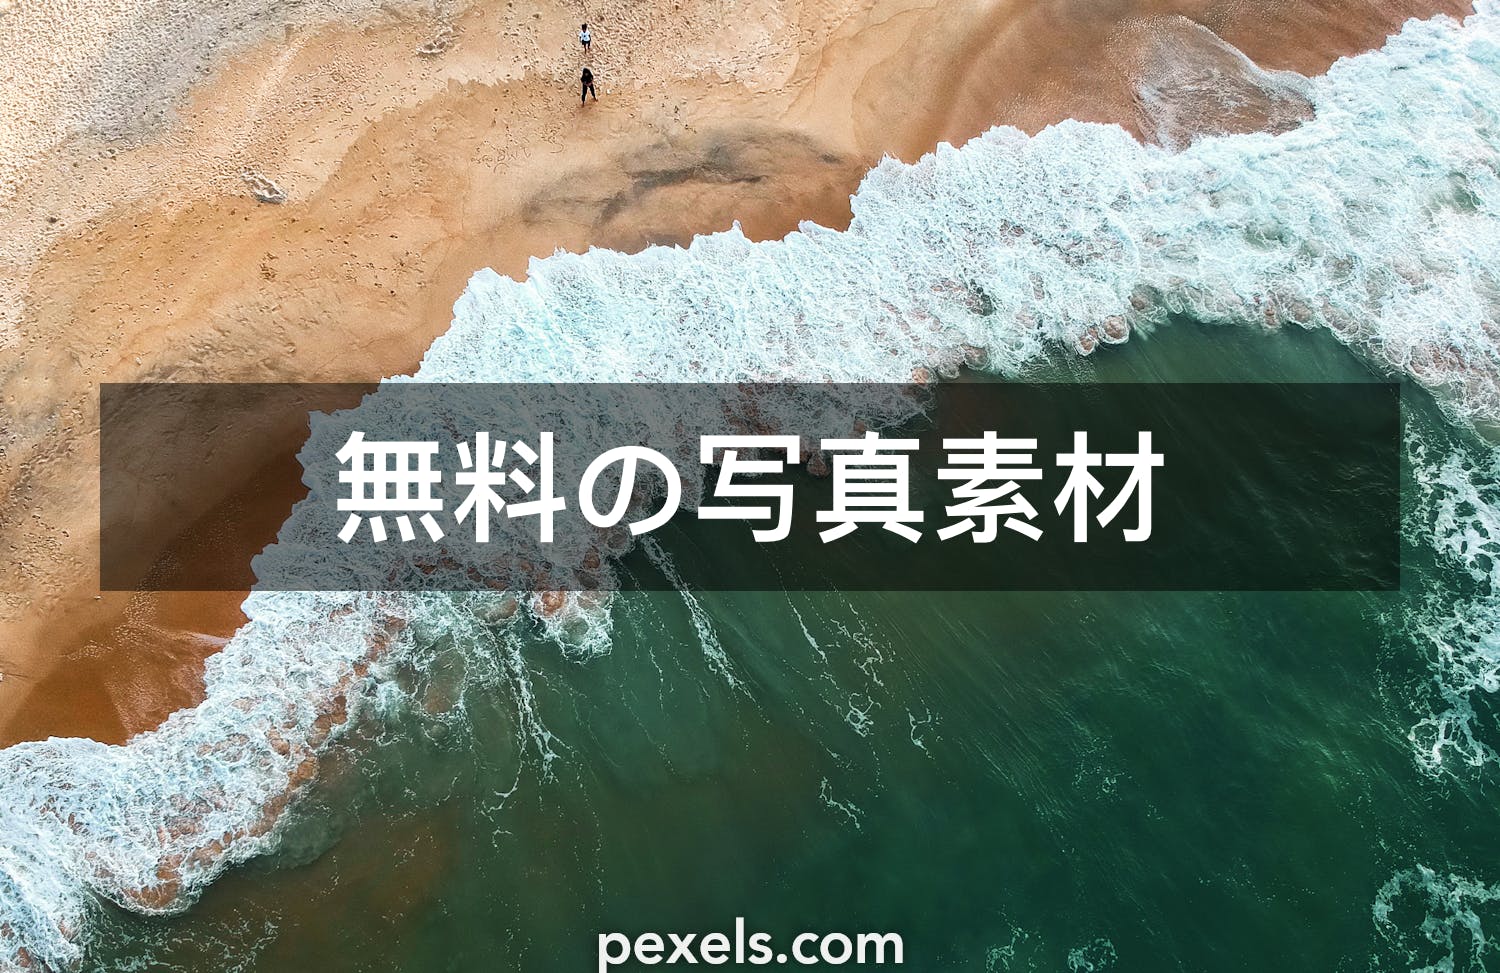 1000 Macの壁紙と一致する写真 Pexels 無料の写真素材